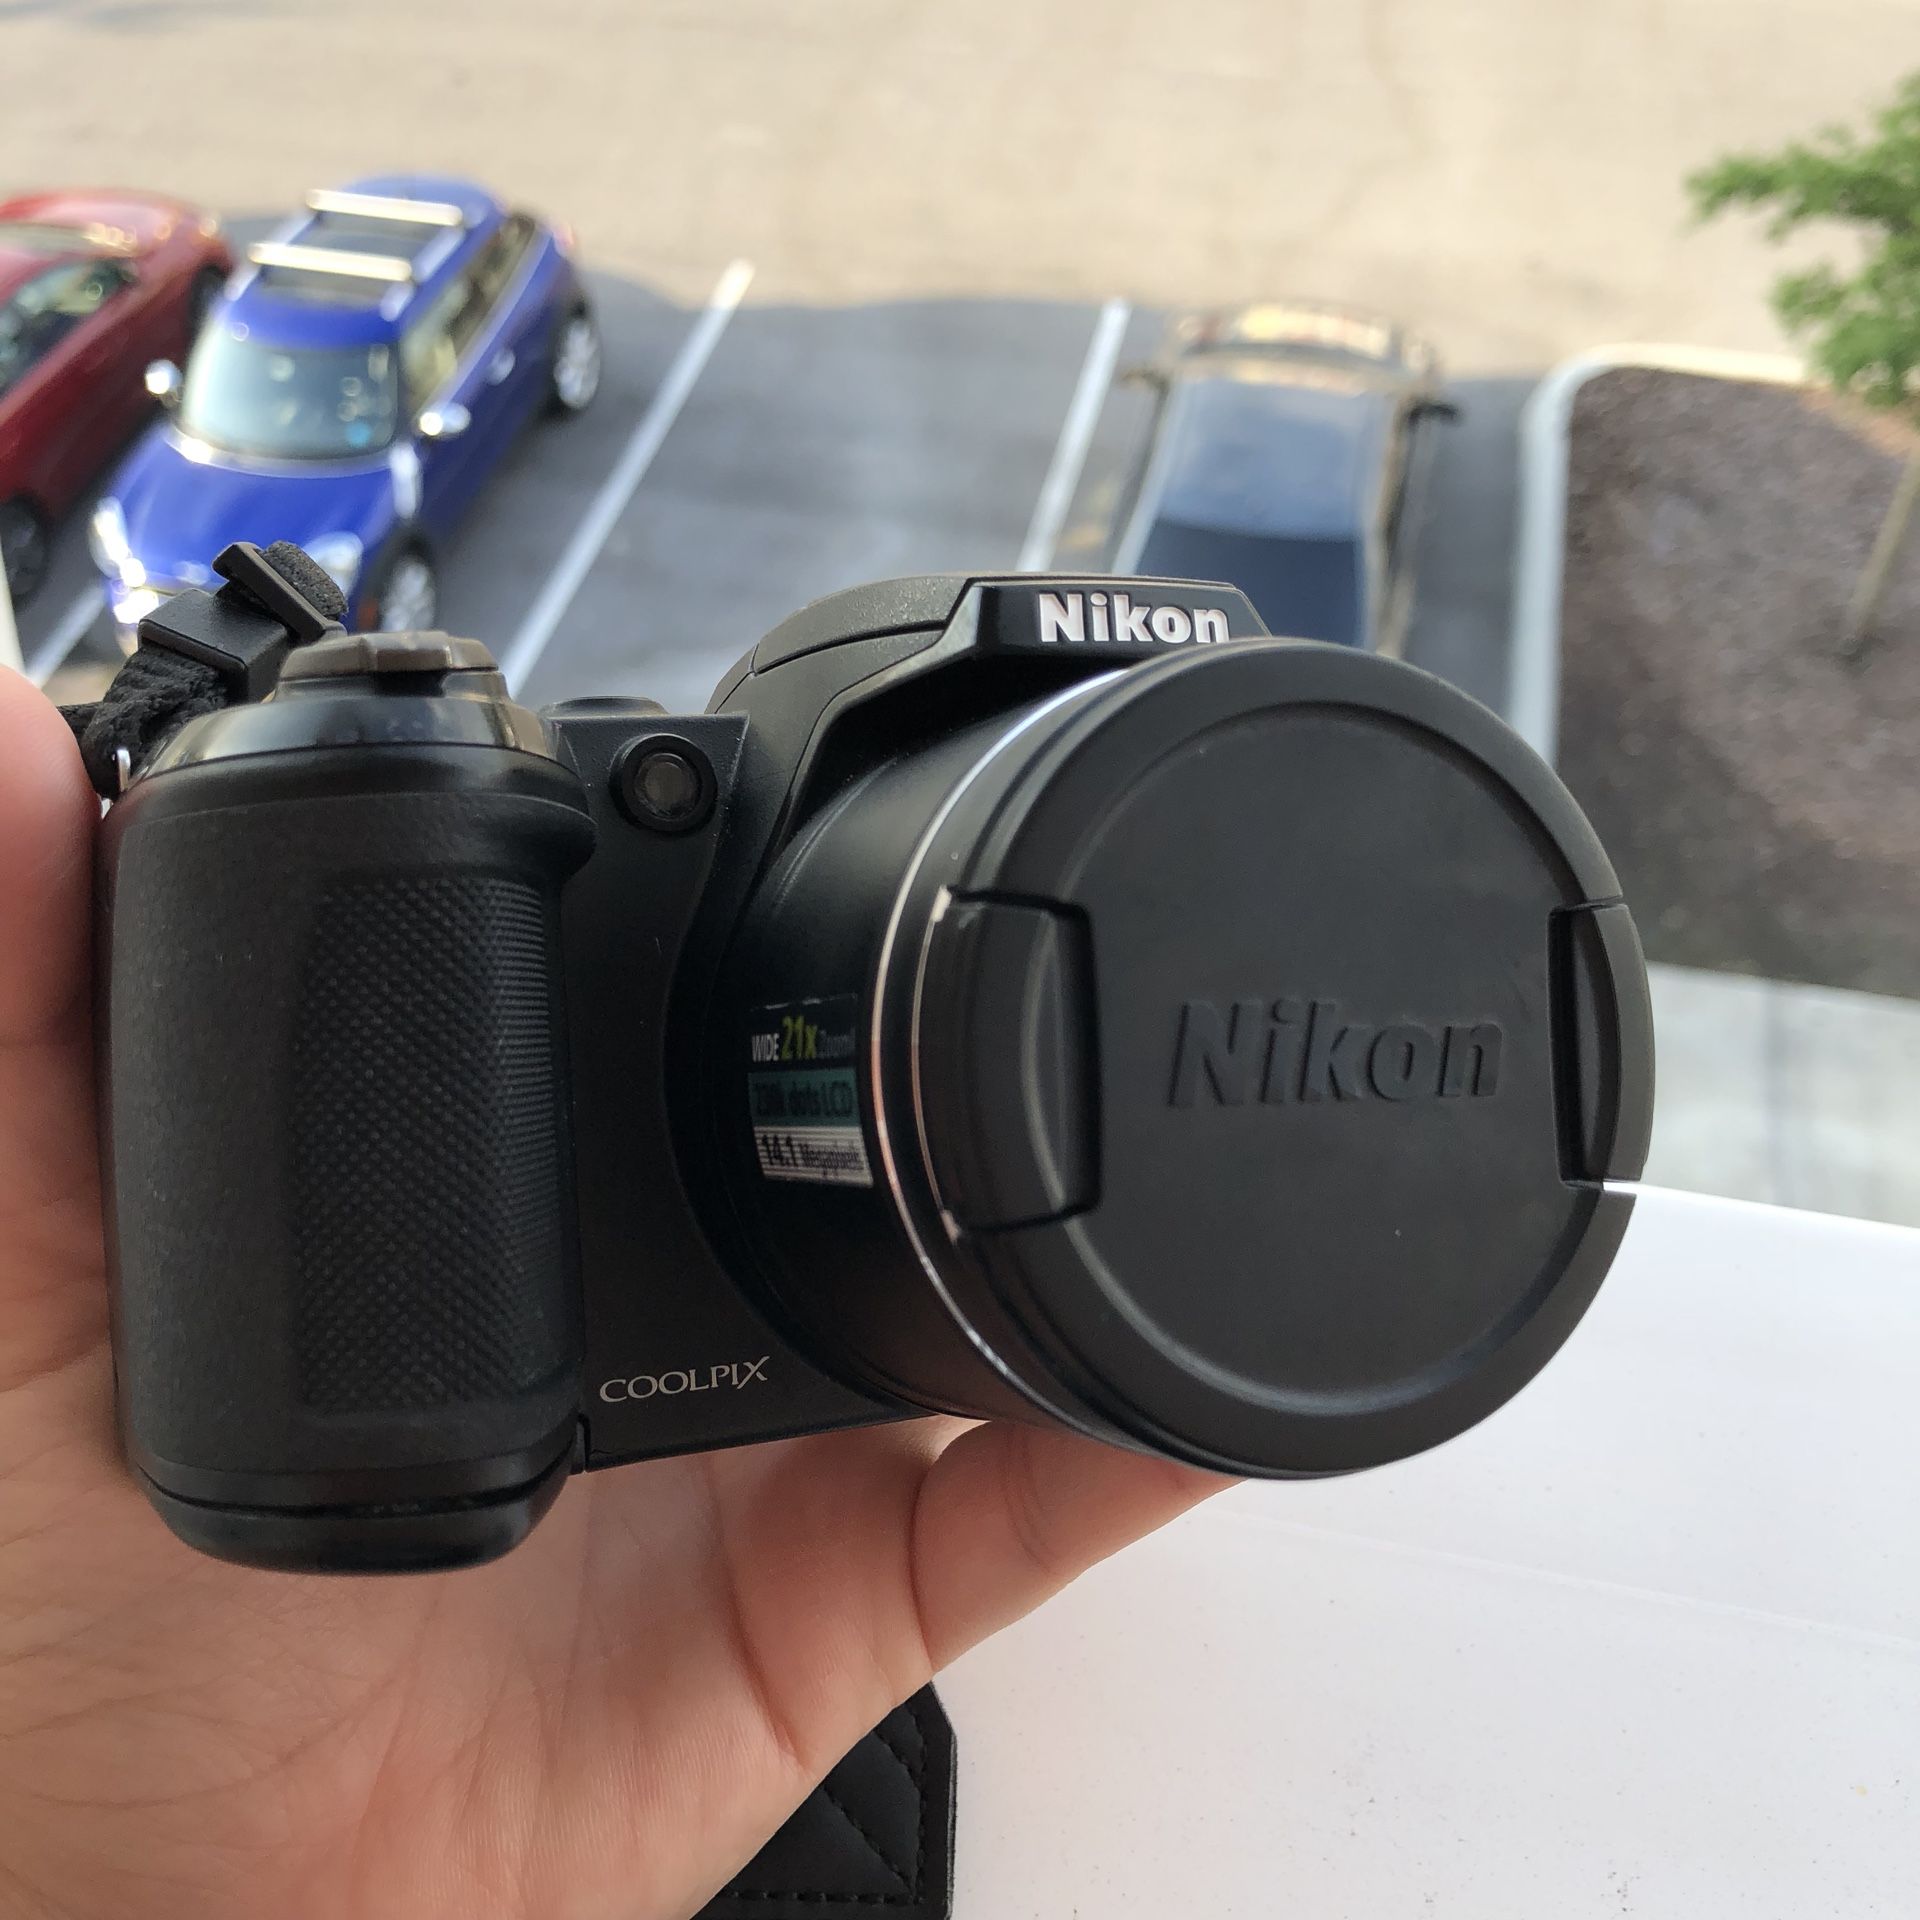 Nikon COOLPIX L310